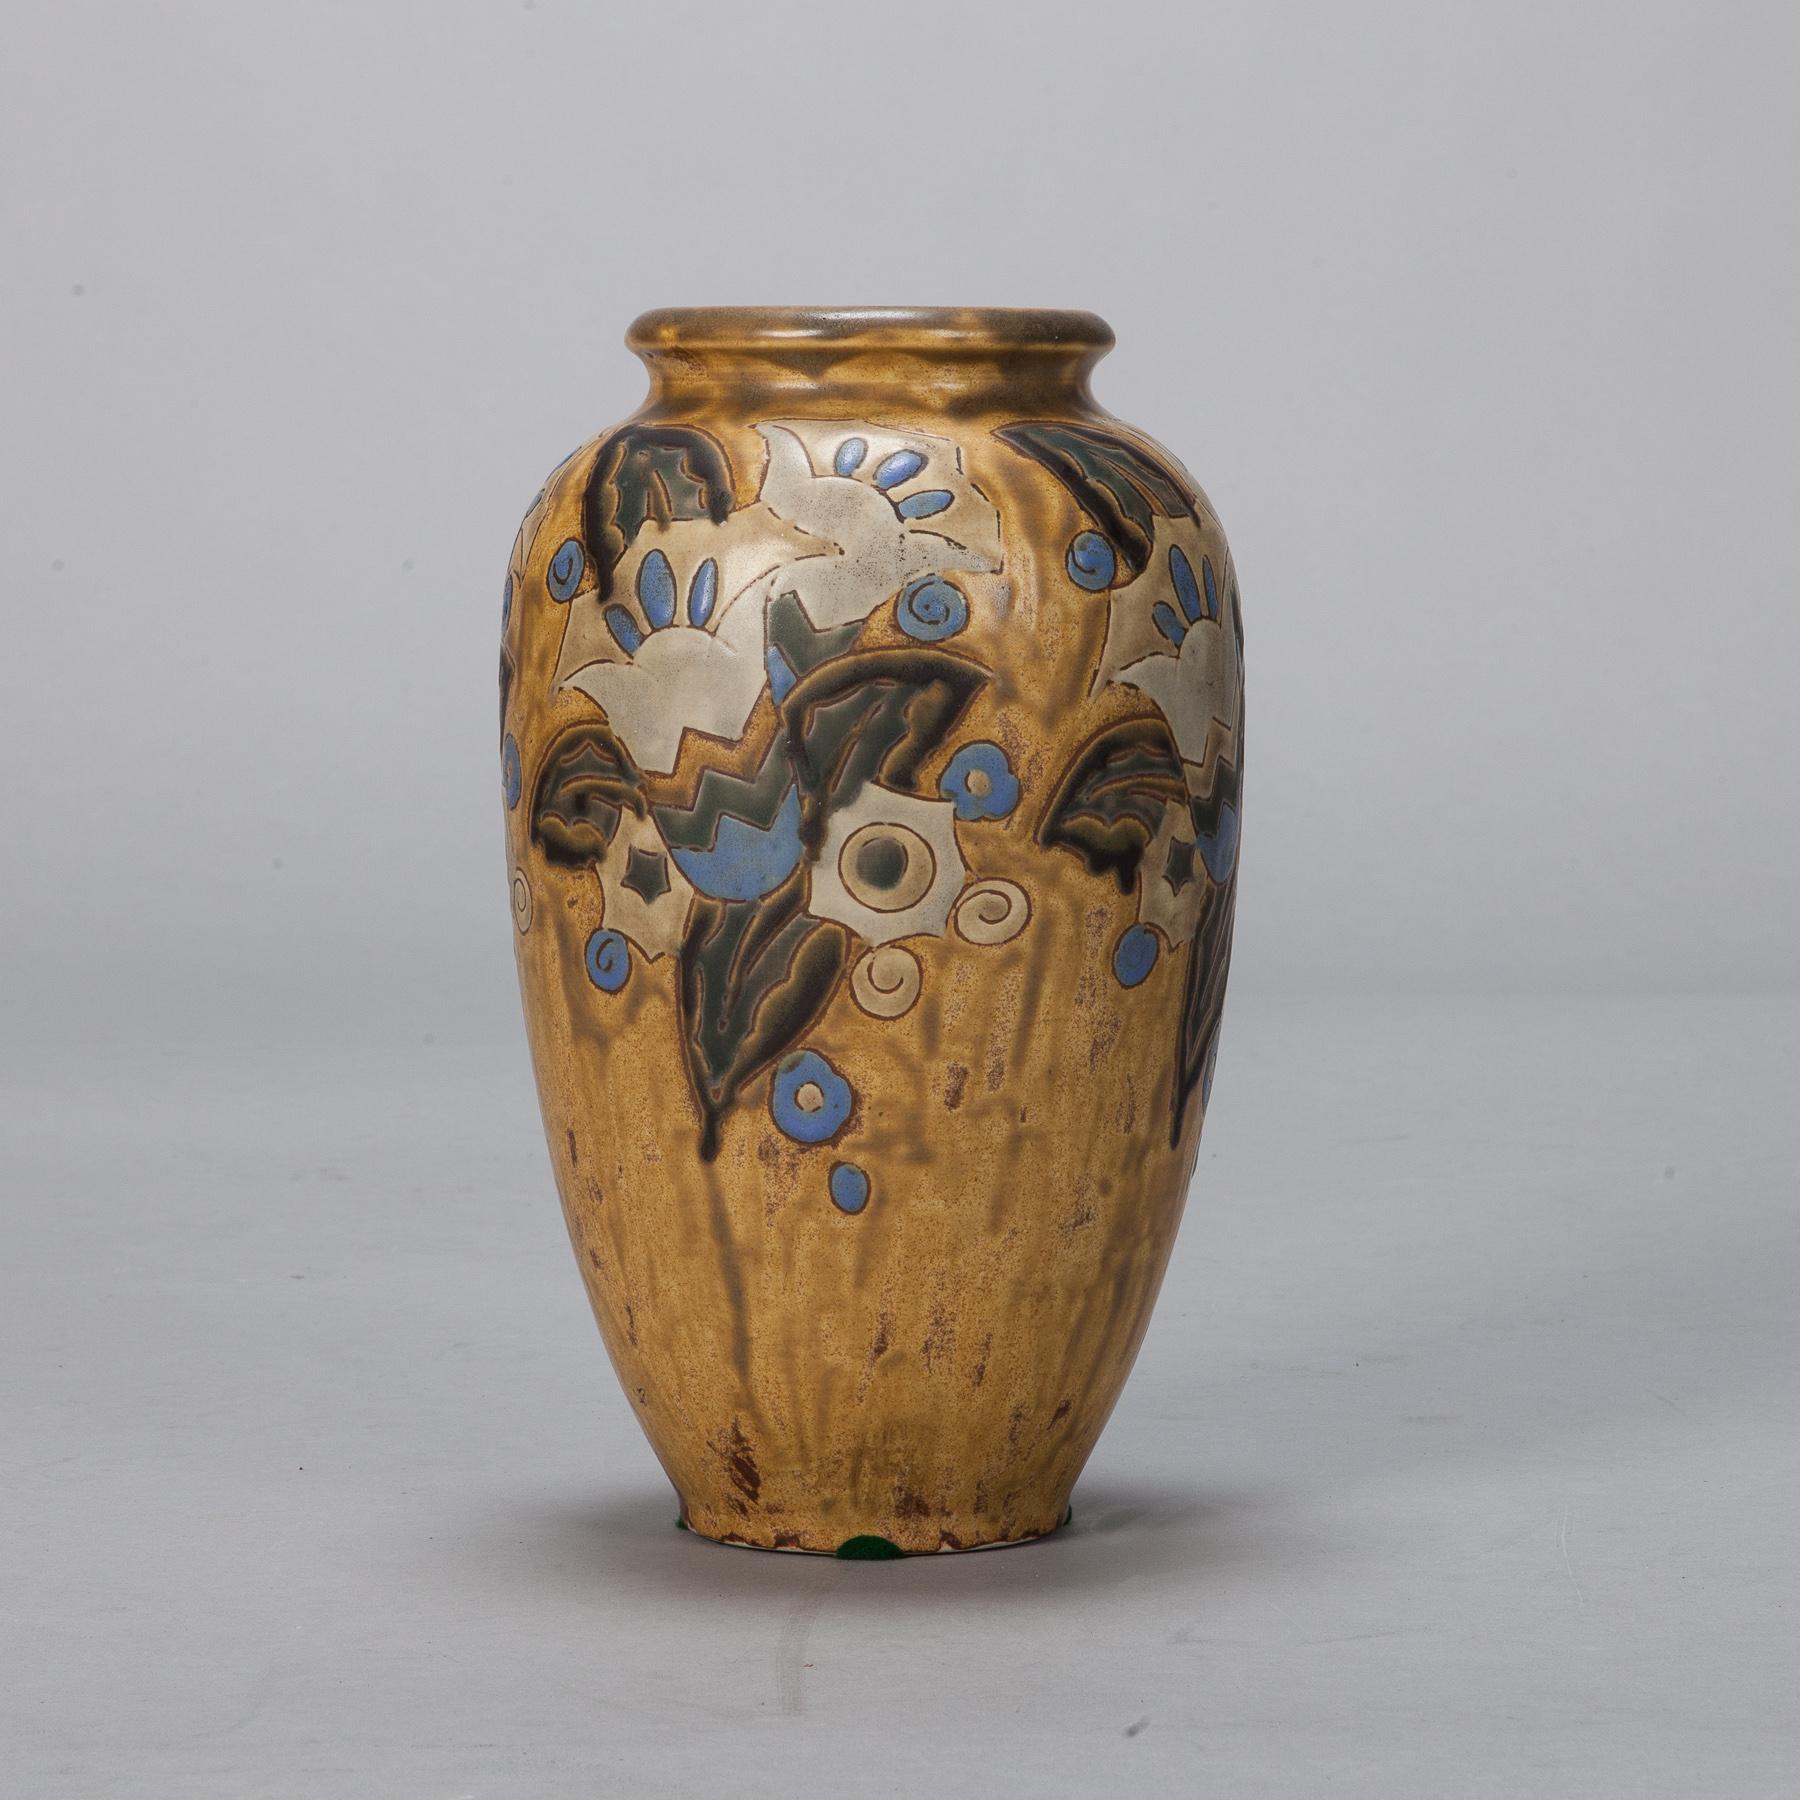 Vase boche en céramique d'époque Art Déco, émaillé de couleur moutarde/dorée avec un motif floral stylisé bleu attribué à Charles Catteau. Marqué sur le fond Gres Keramis - Boche Belgium 911. 